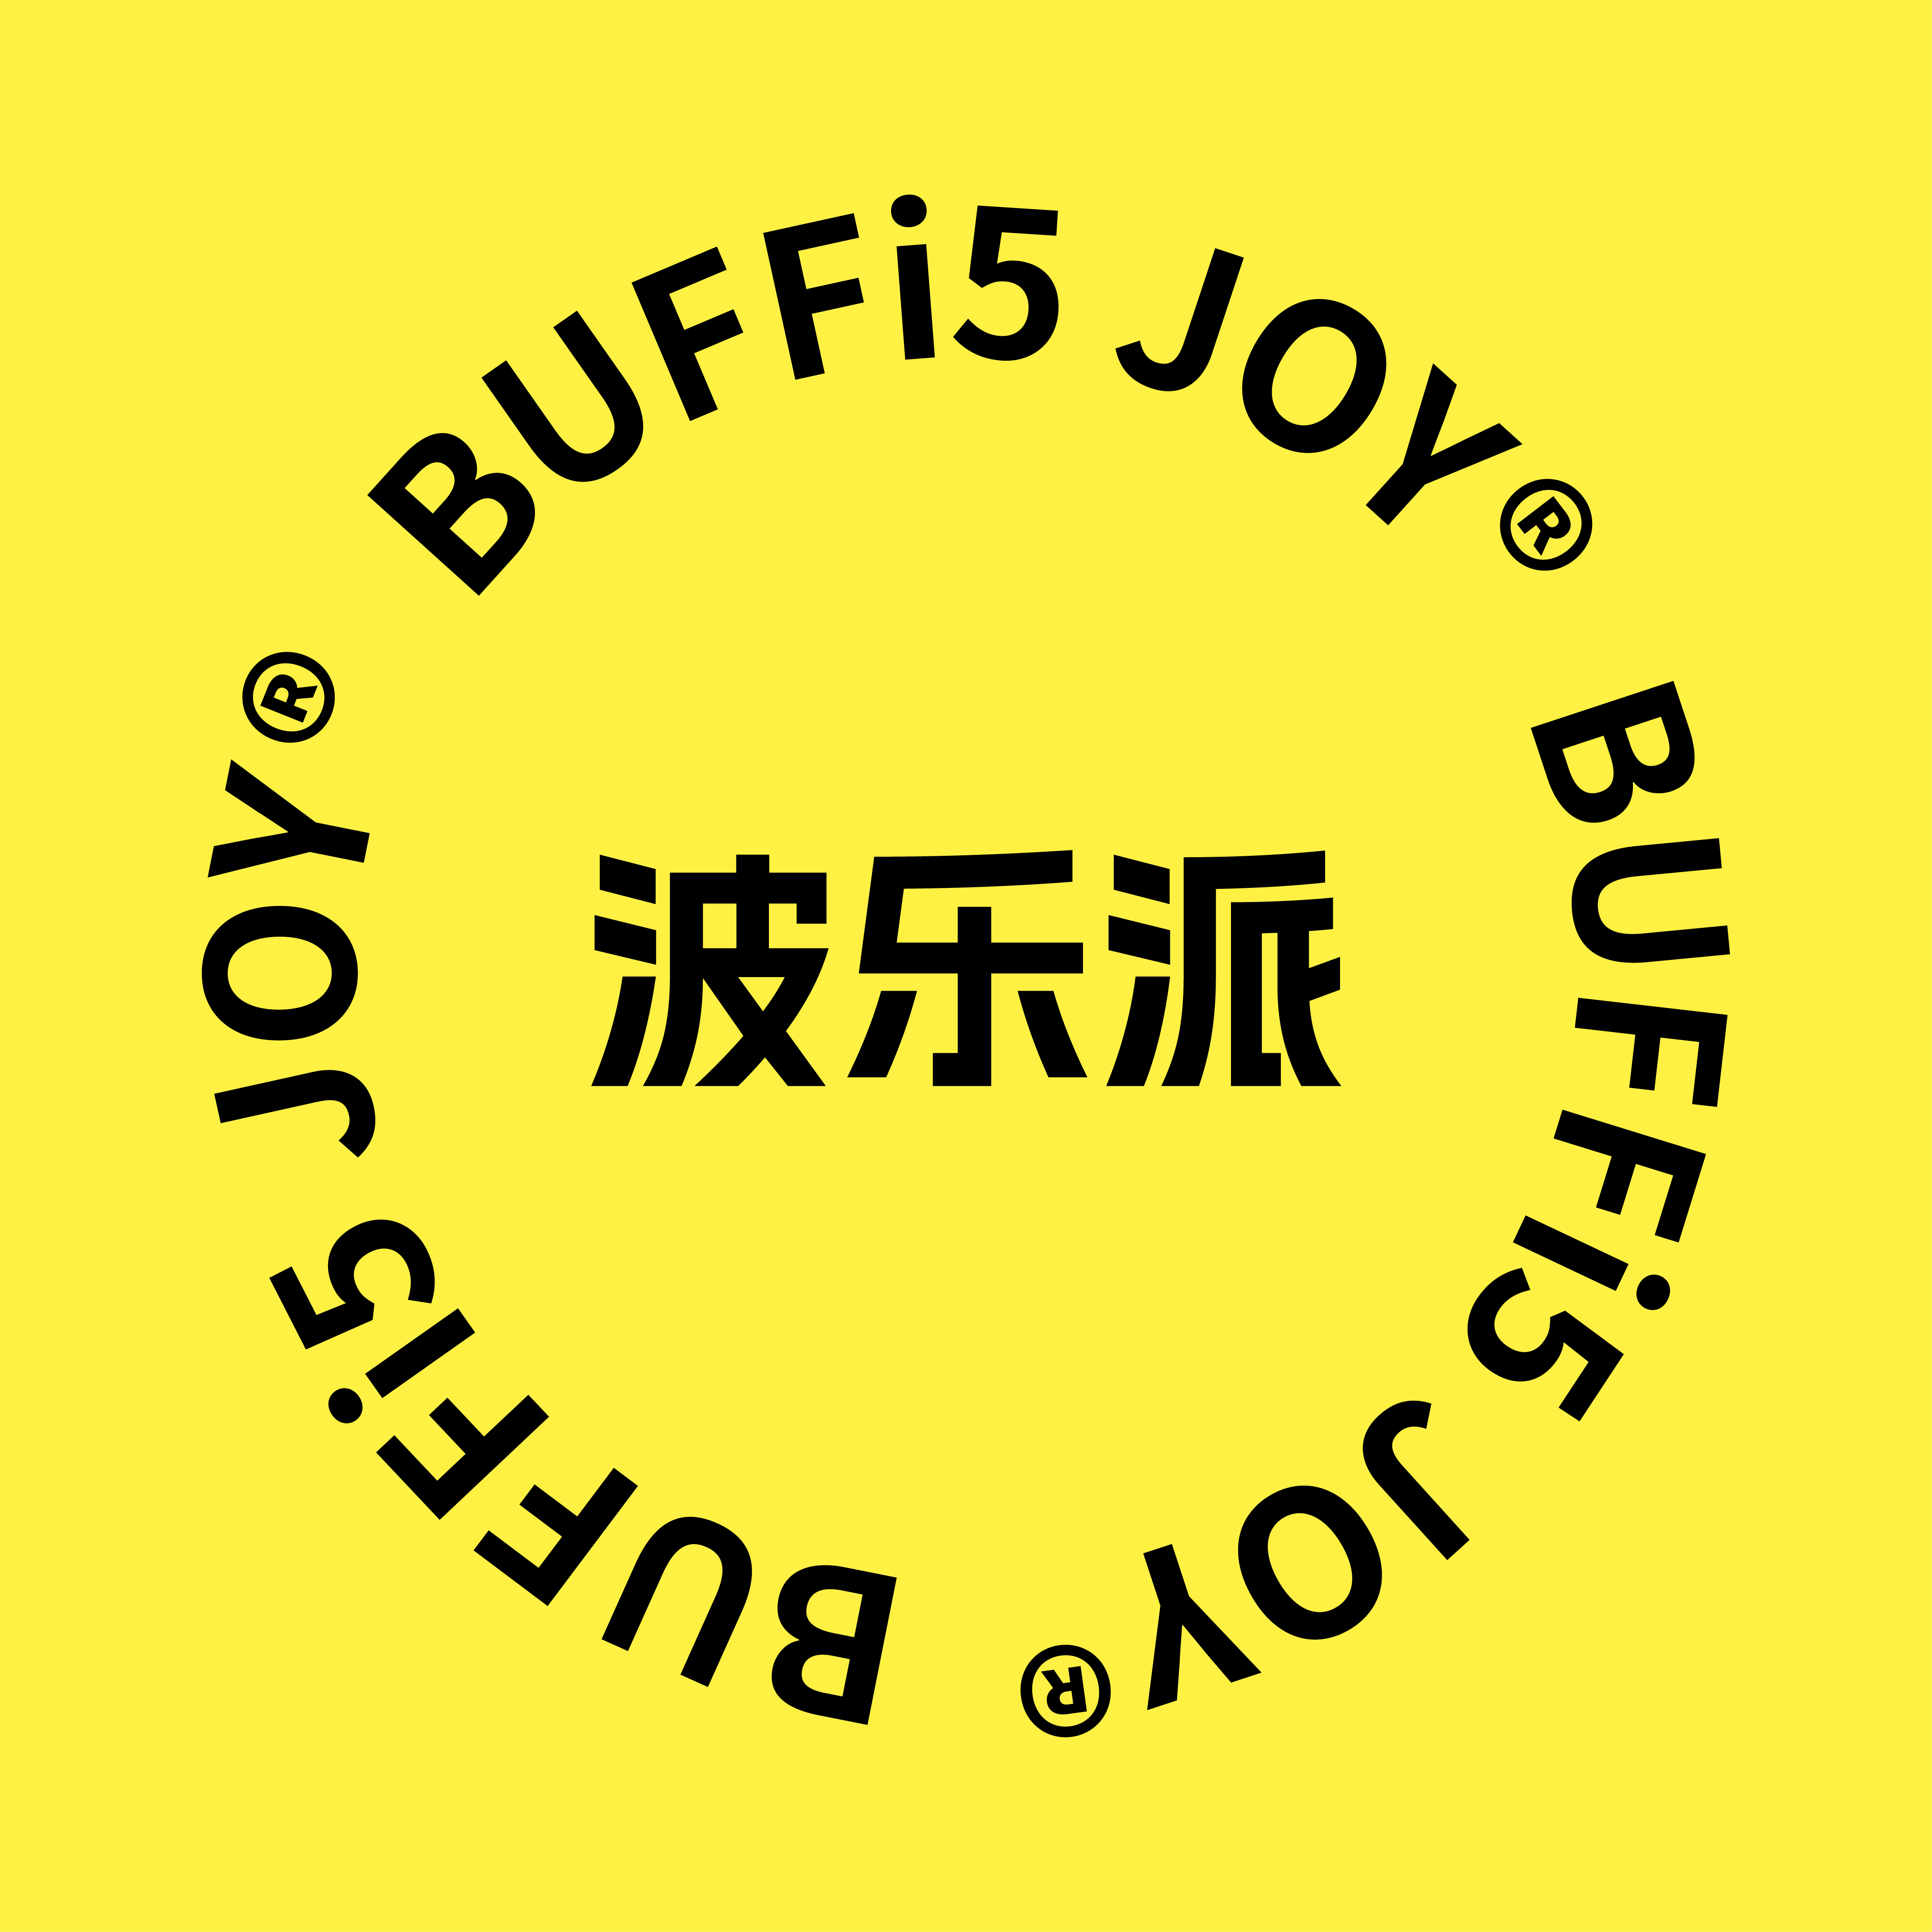 BUFFi5JOY旗舰店